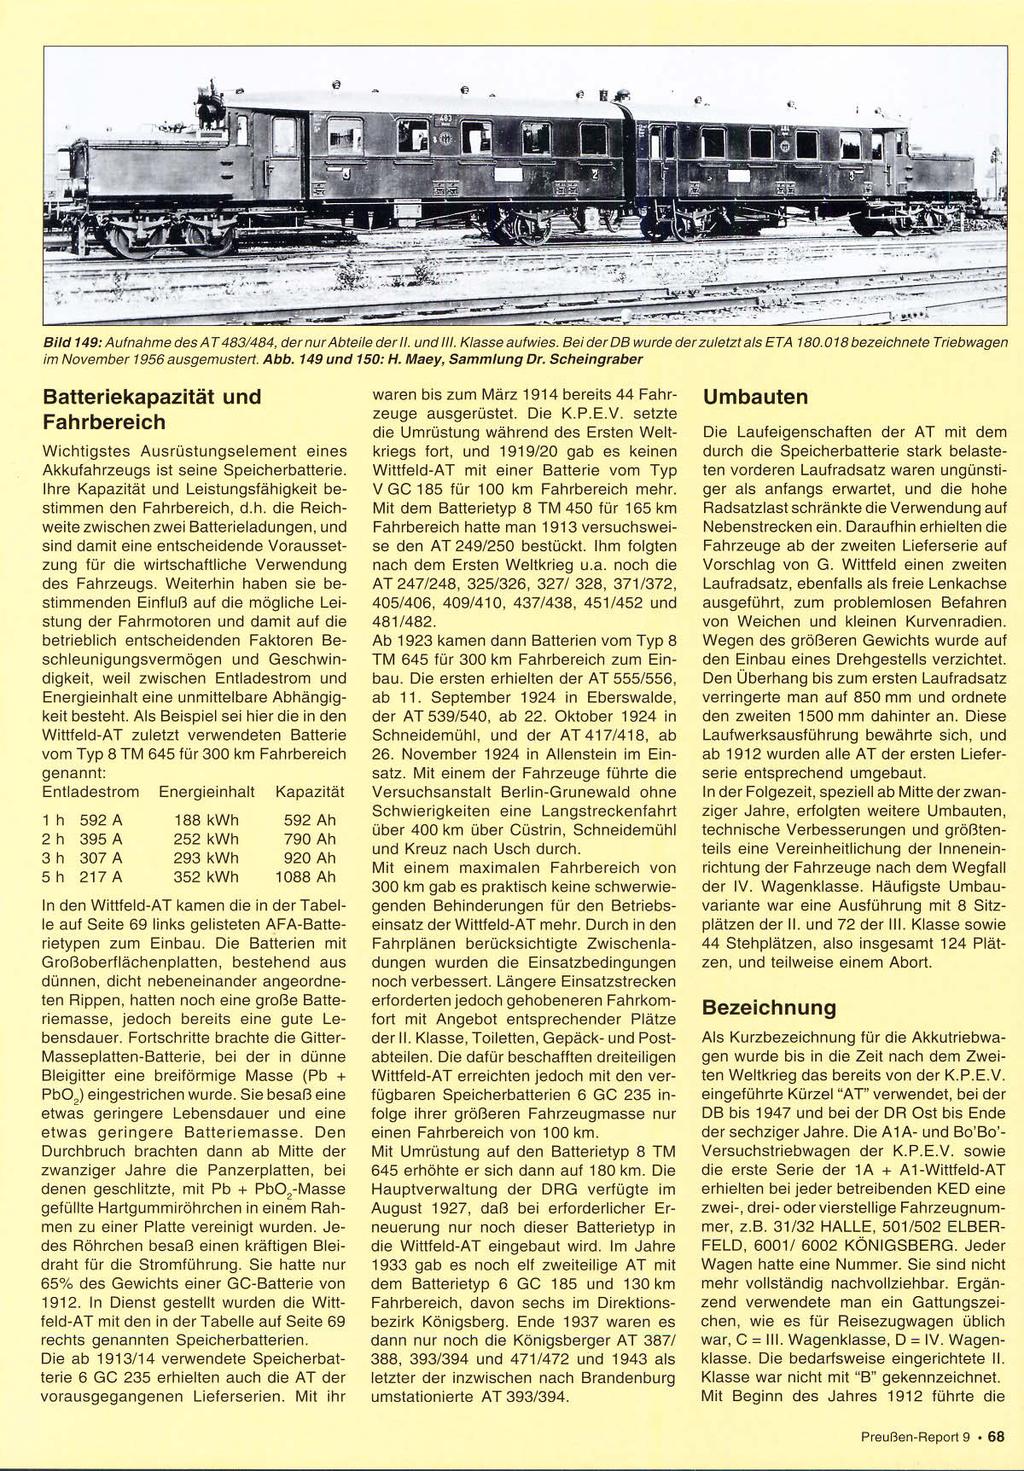 Bild 149:Aufnahme desat483/484. dernurabte/lederii und///. Klasseaufw,es Be/derDB wurde derzuletztals ETA 180 018bezeichnete TrIebwagen im November 1956 ausgemustert. Abb. 149 und 150: H.